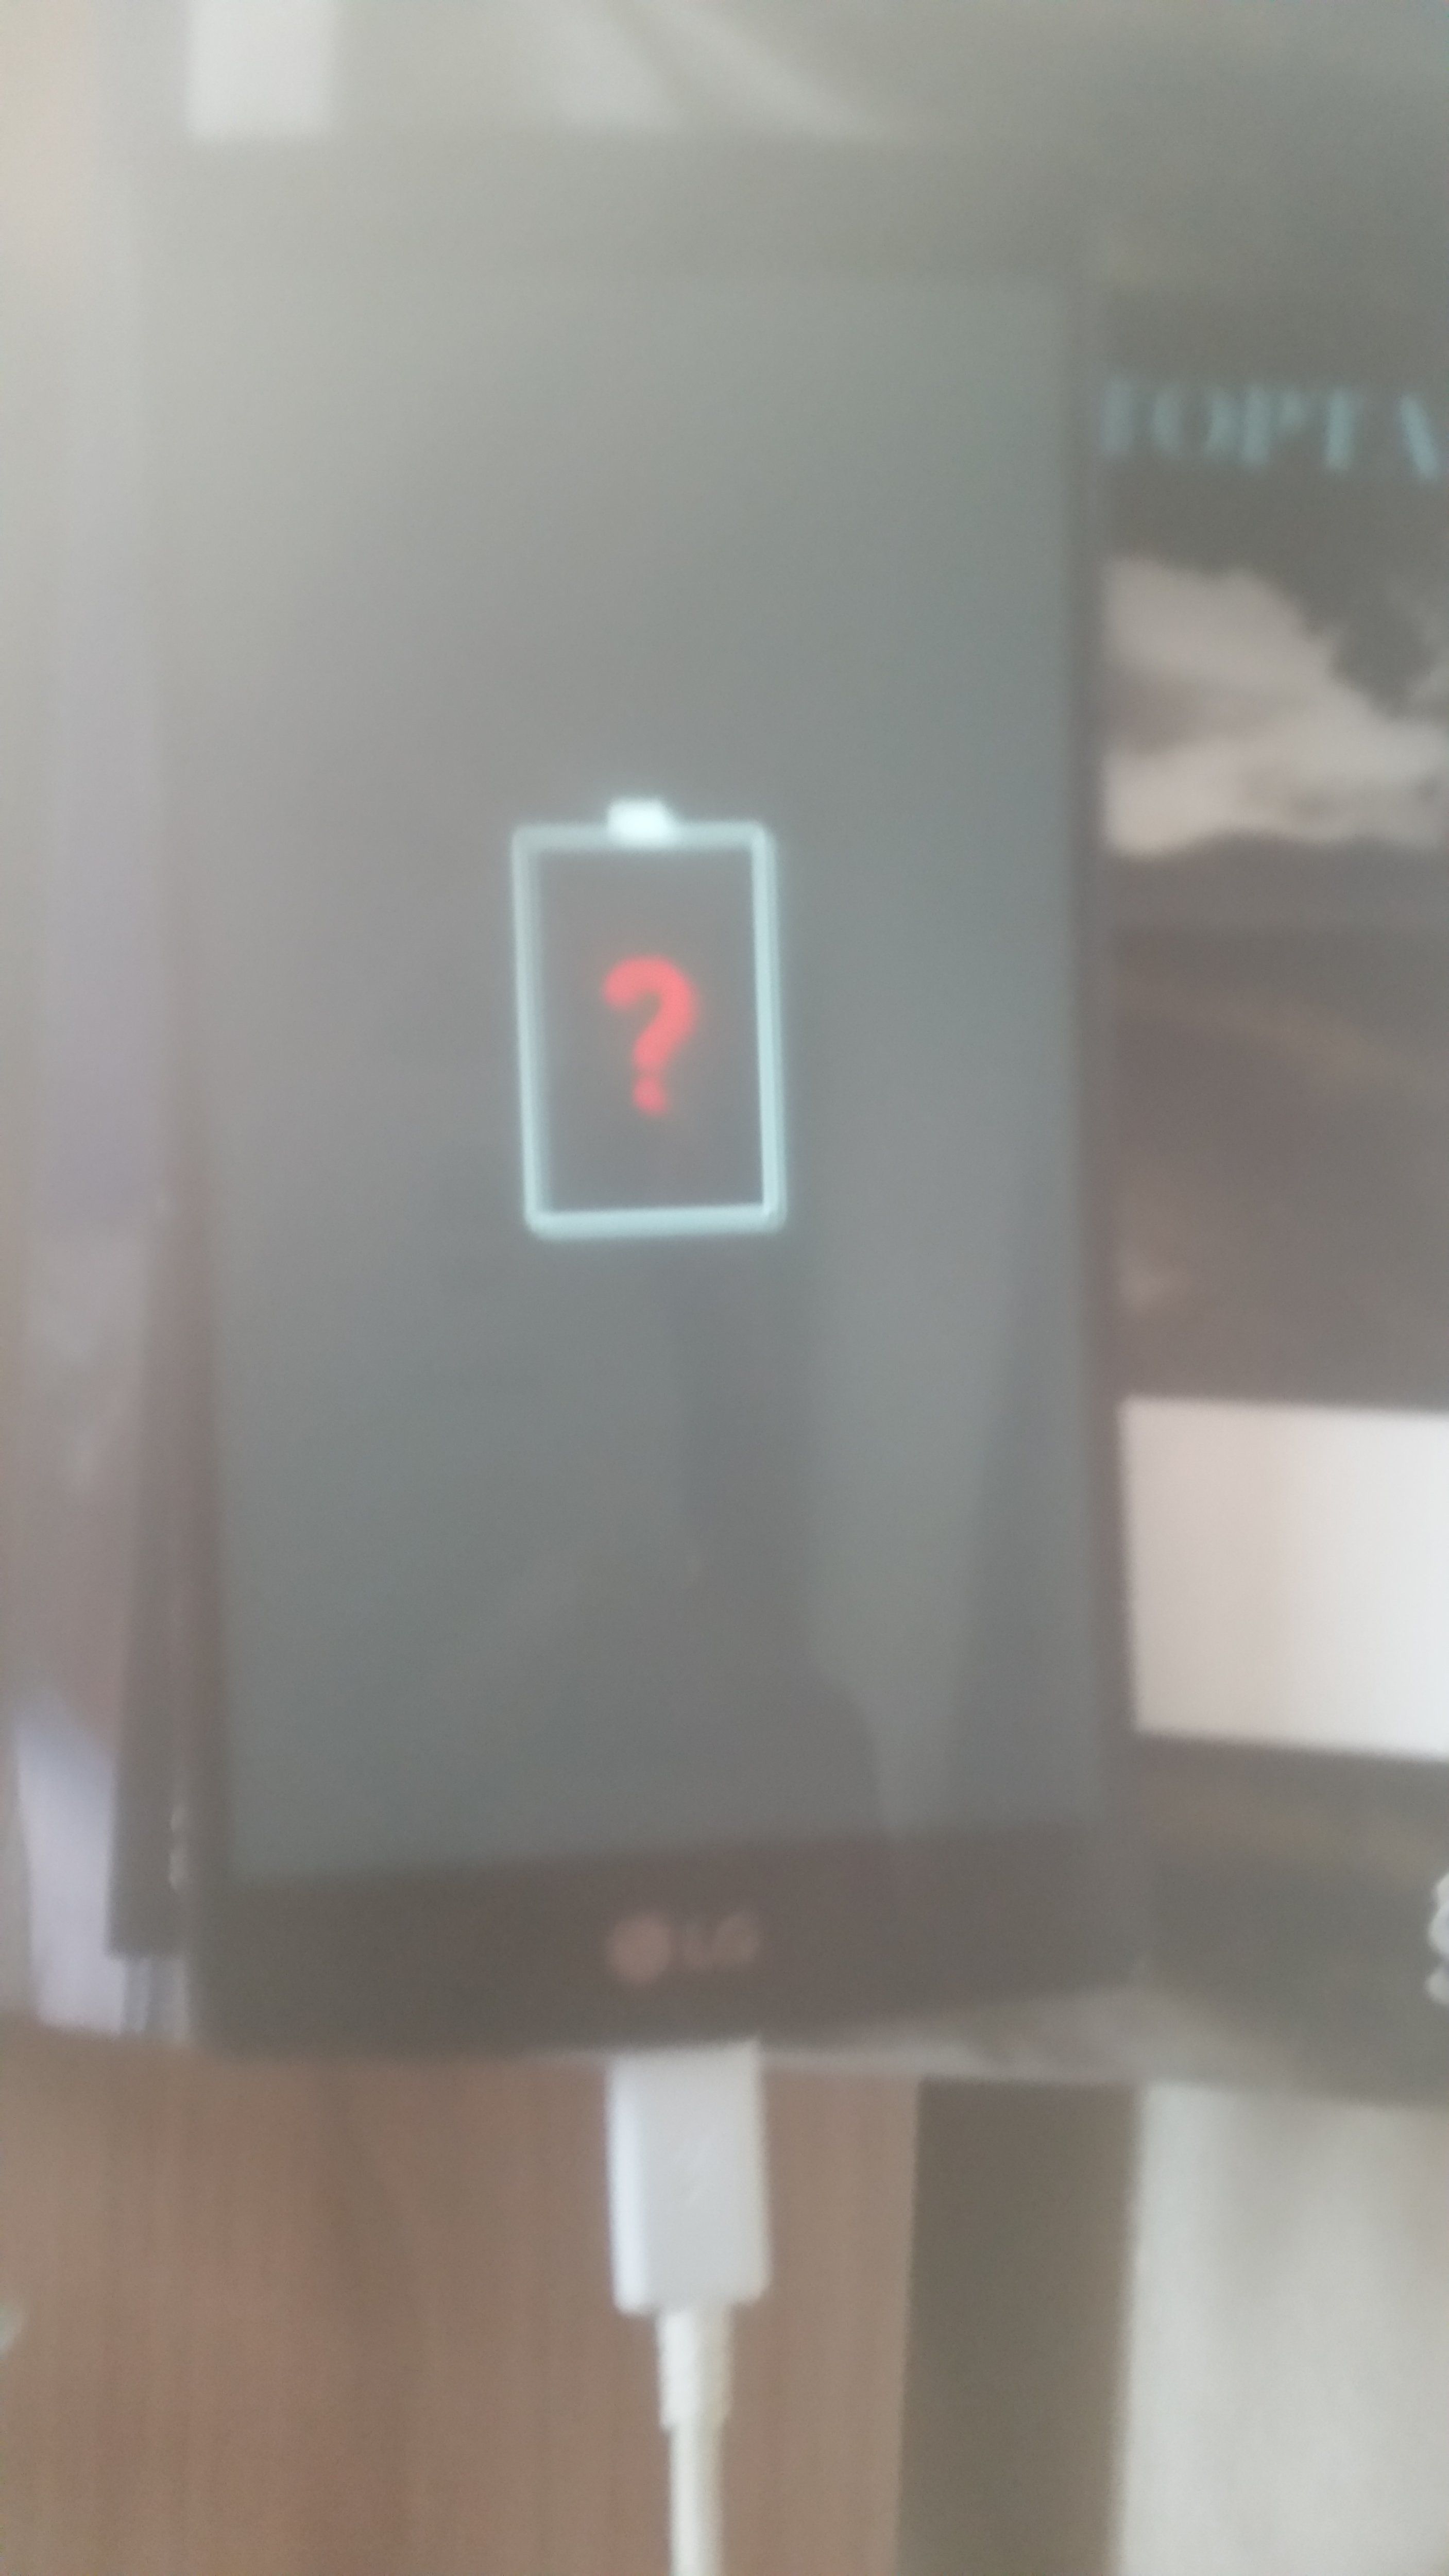 LG Batarya Üzerinde Çıkan Soru İşareti | Technopat Sosyal